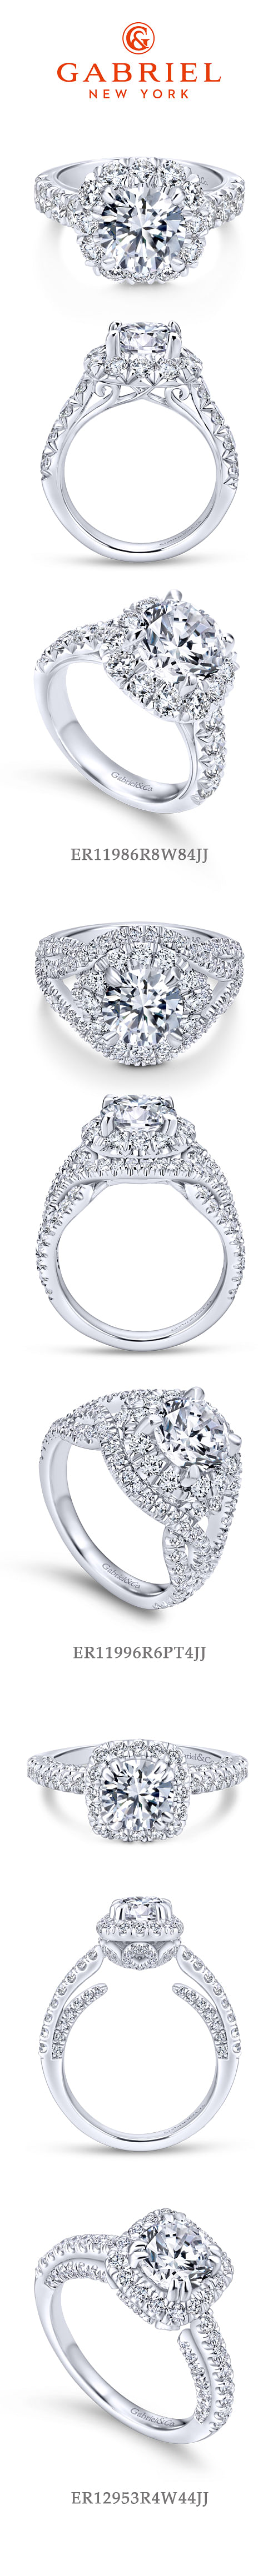 18K White Gold Cushion Halo Round Diamond Engagement Ring angle 